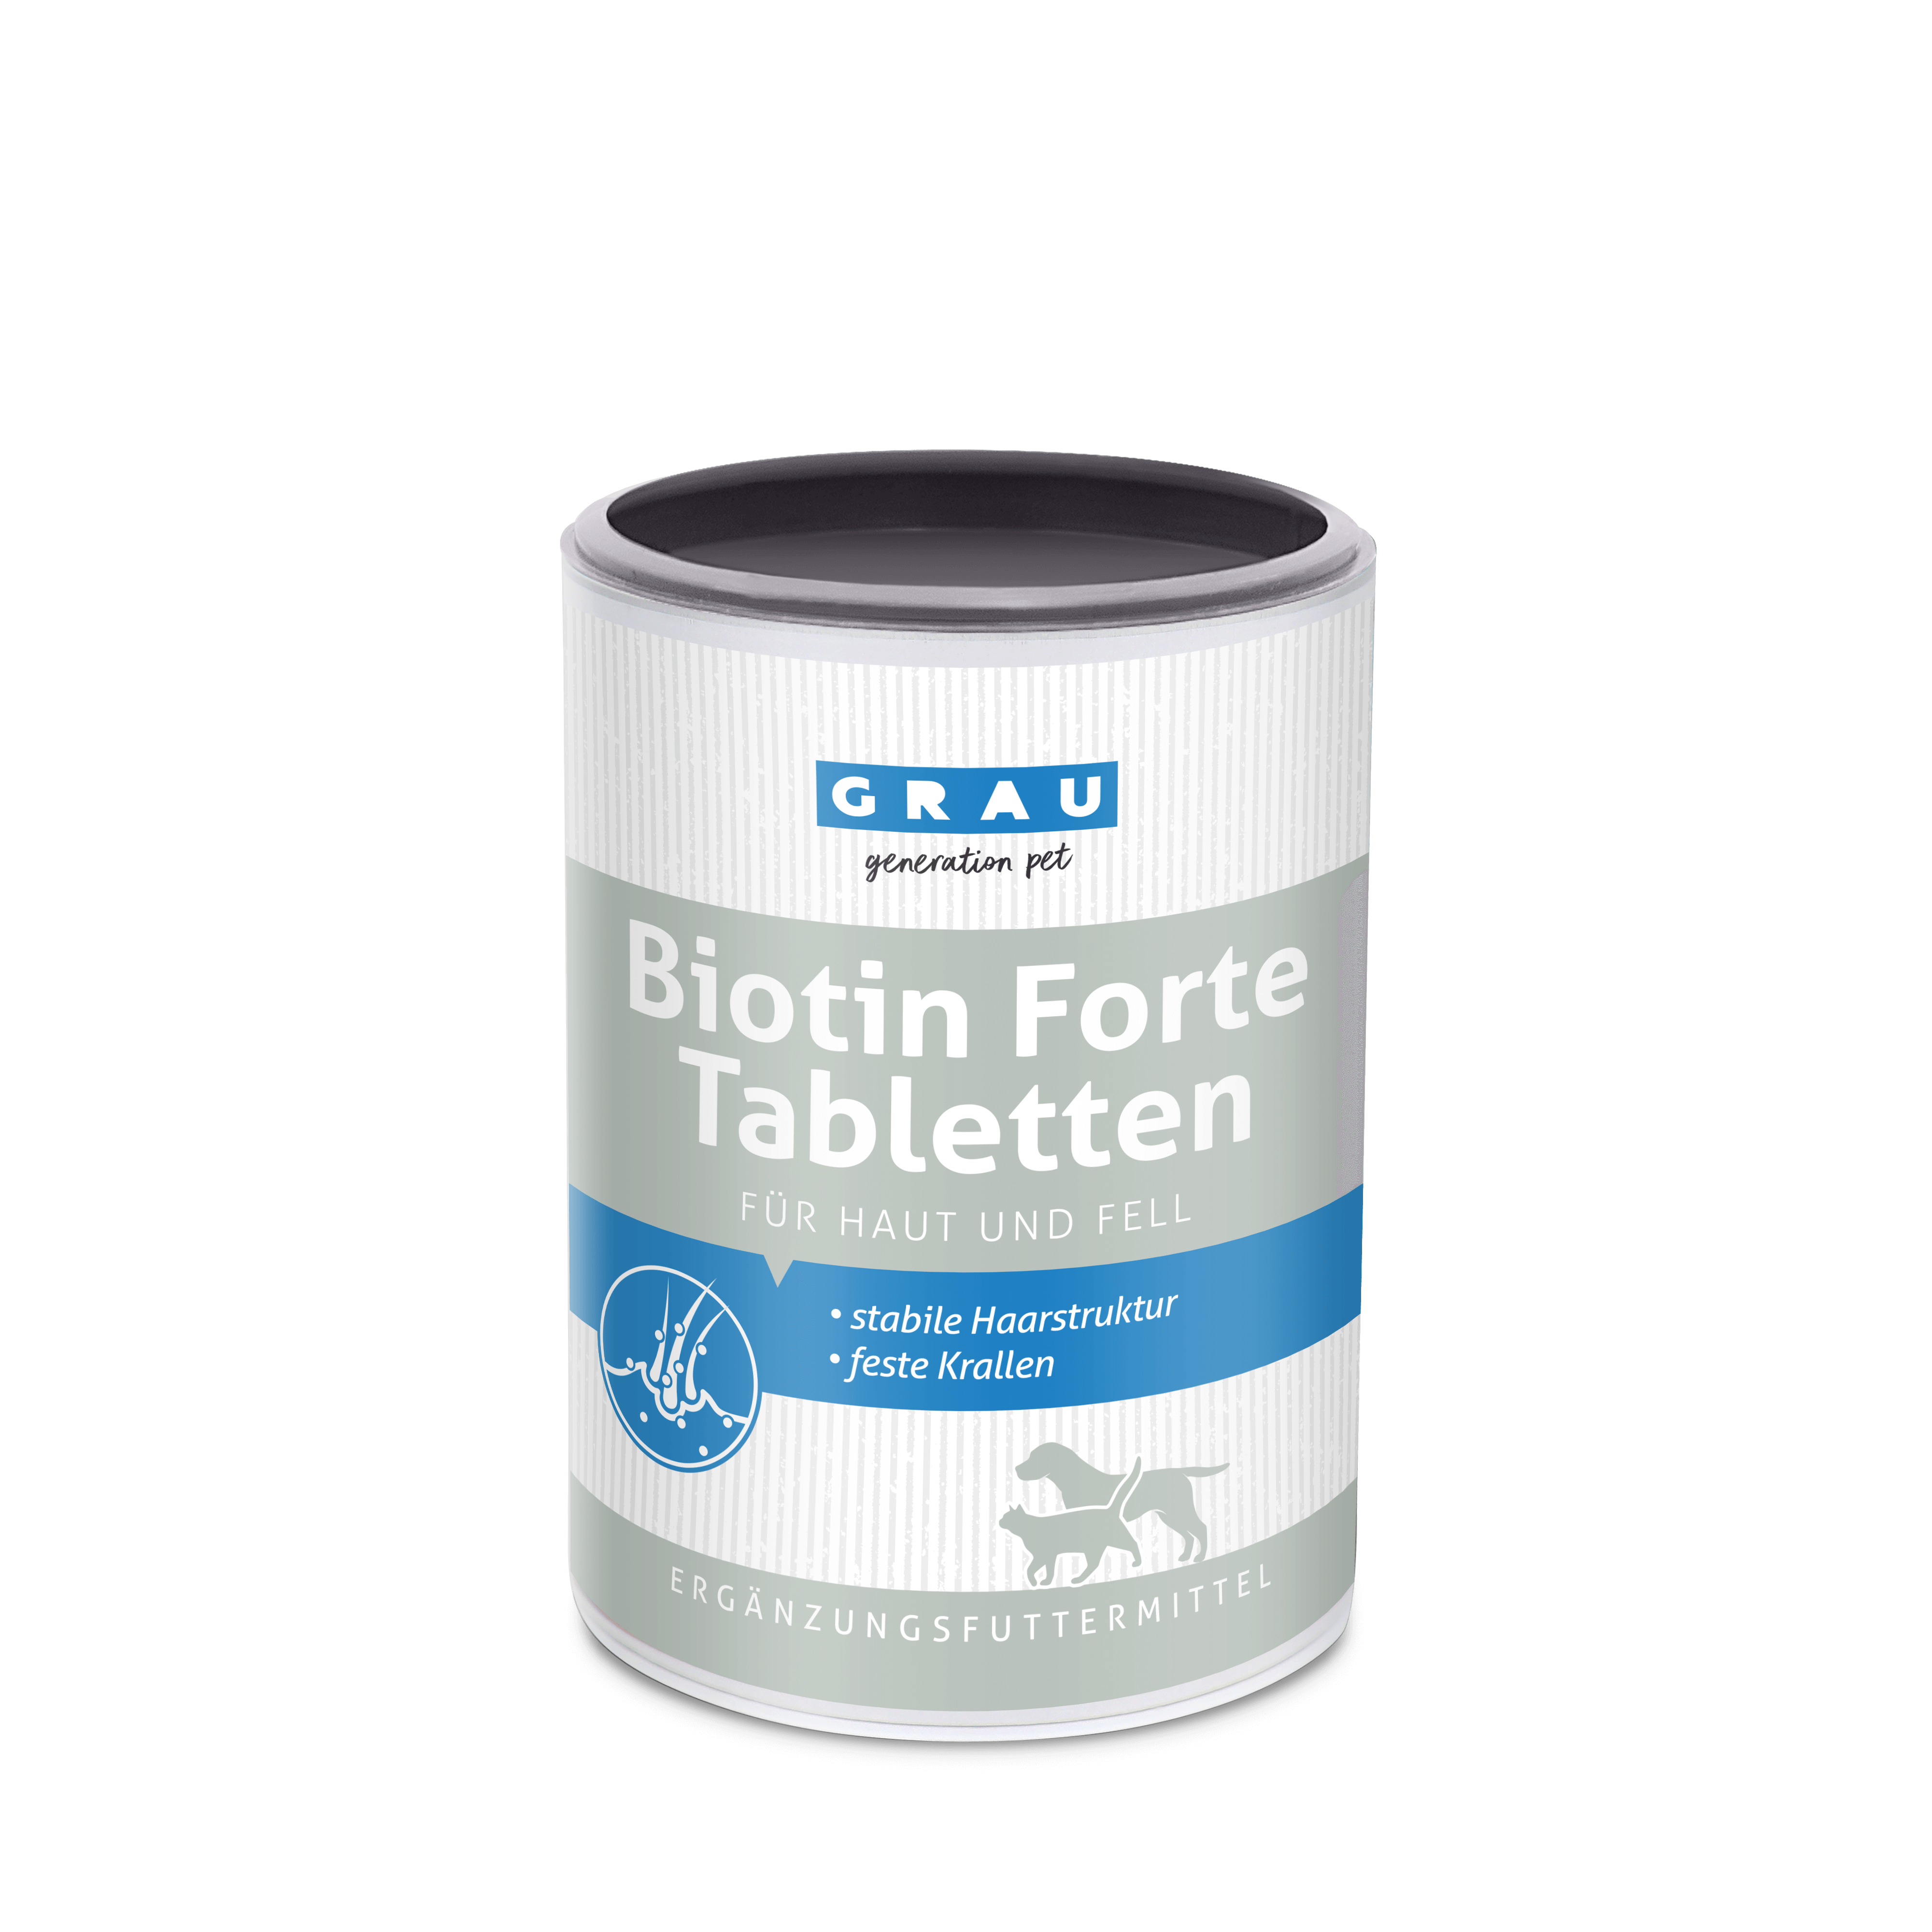 Biotin Forte Tabletten 400 Stk.